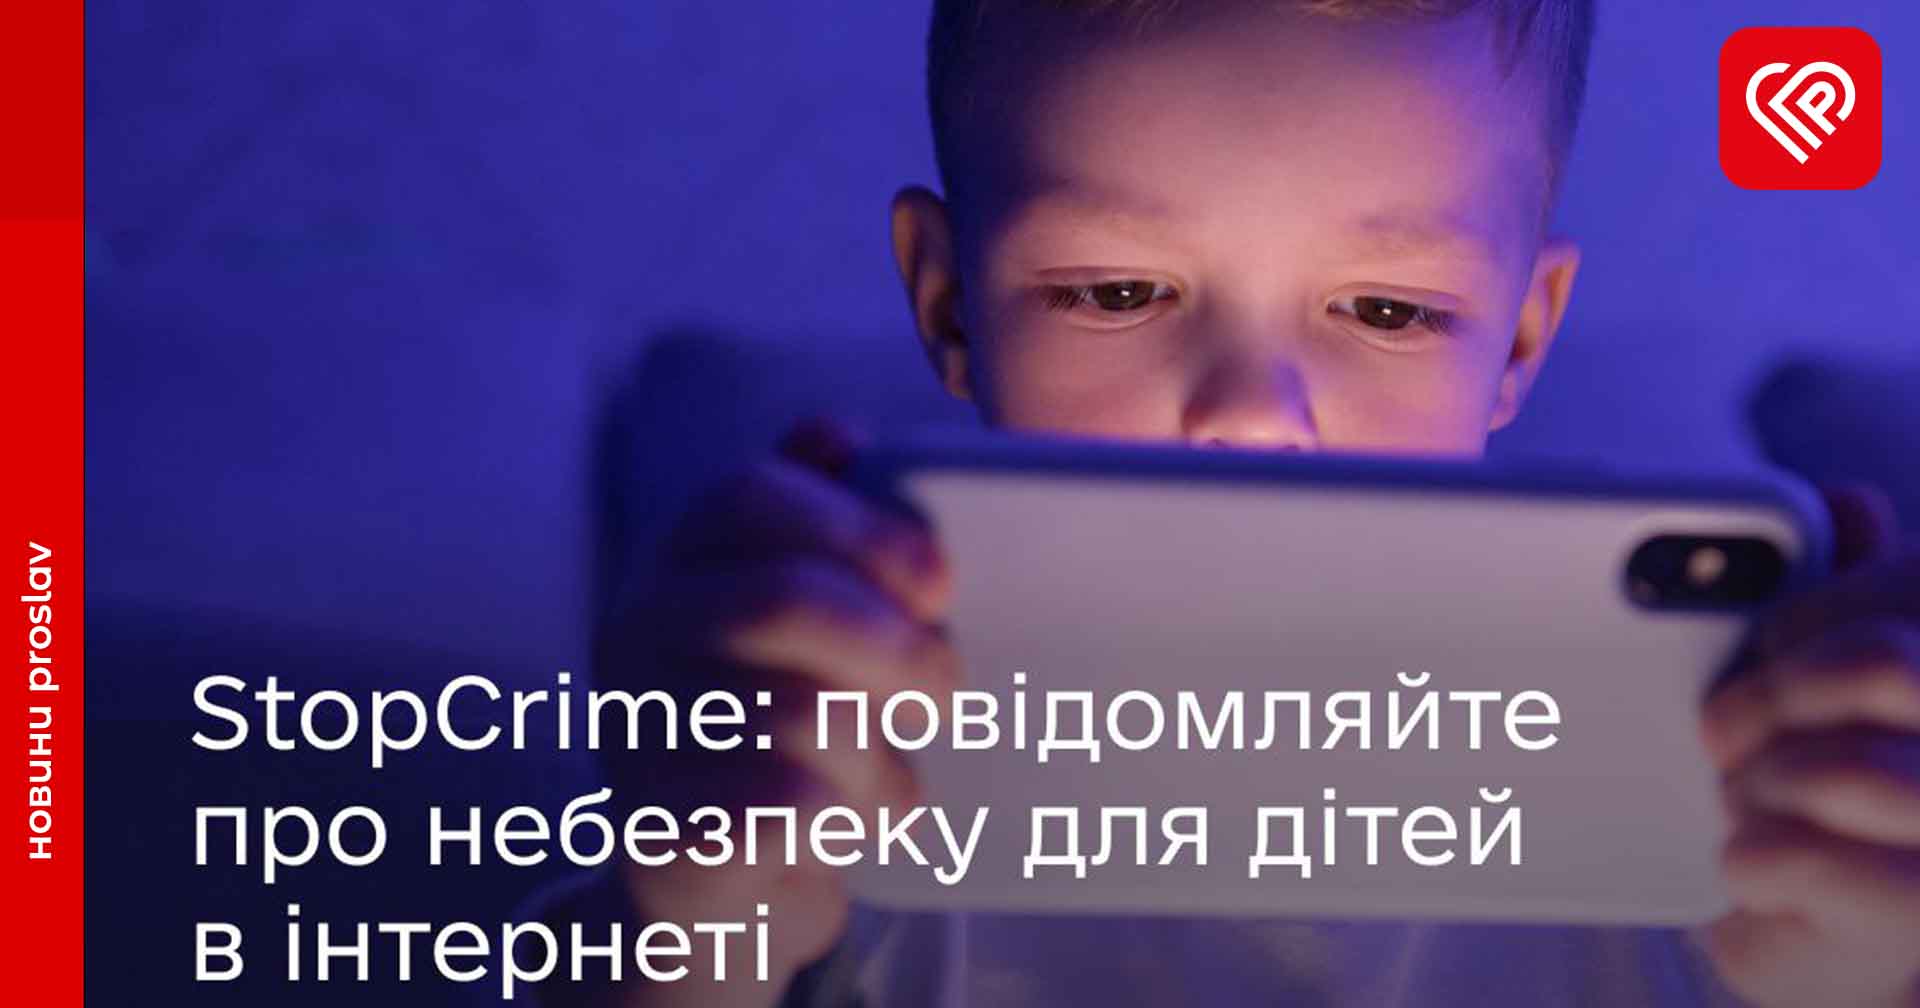 Кіберполіція закликає повідомляти про контент із сексуальним насильством над дітьми